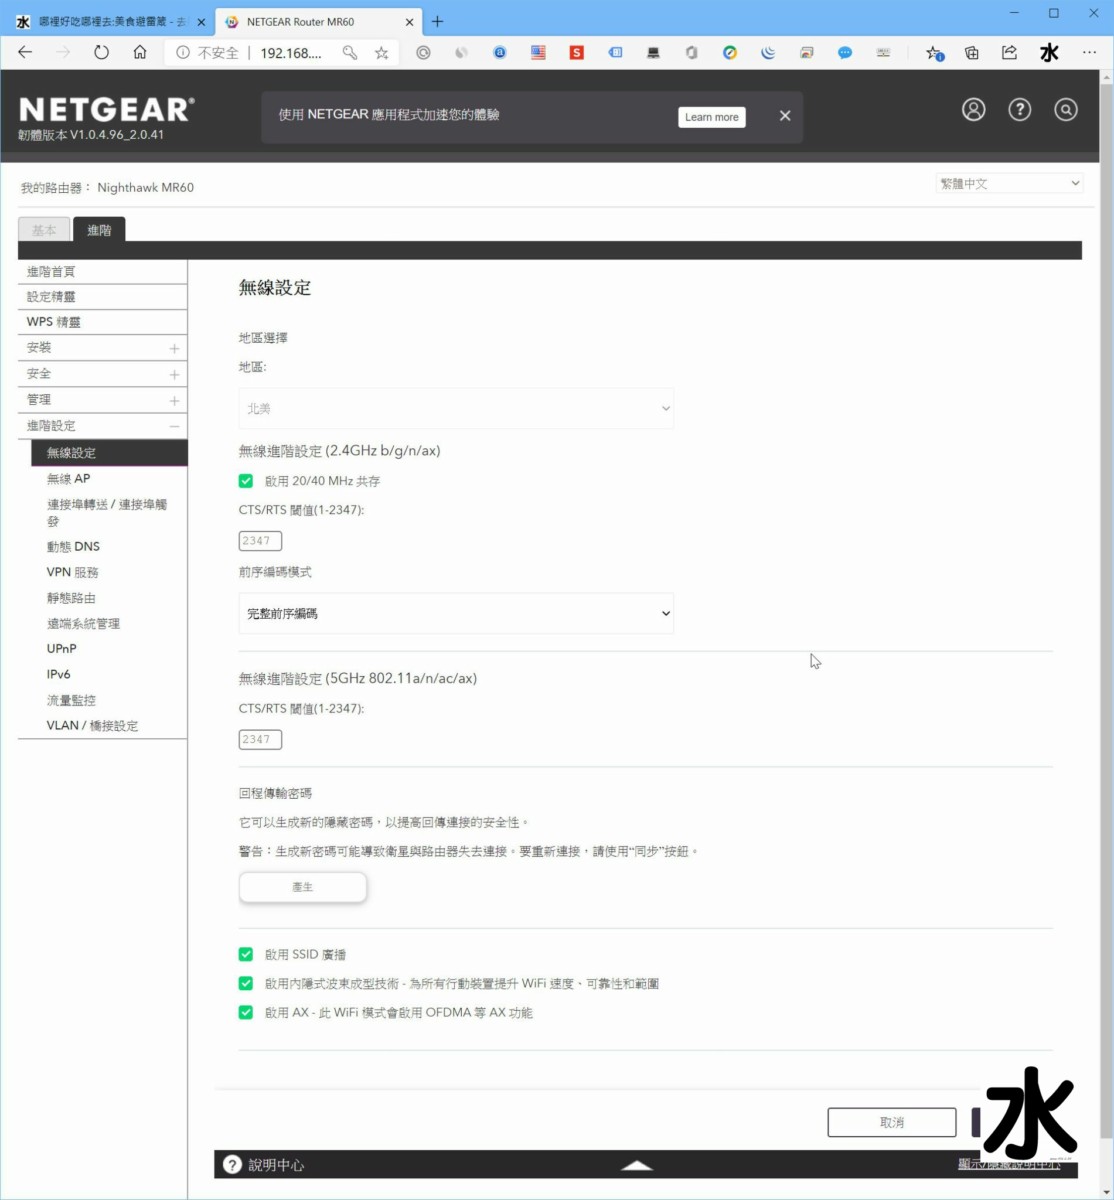 【數位3C】NETGEAR Nightwhak AX1800 MK63 WiFi 6 Mesh網狀網路基地台 : 覆蓋全面超給力,訊號較弱也不掉封包 3C/資訊/通訊/網路 新聞與政治 硬體 網路 網通設備 試吃試用業配文  